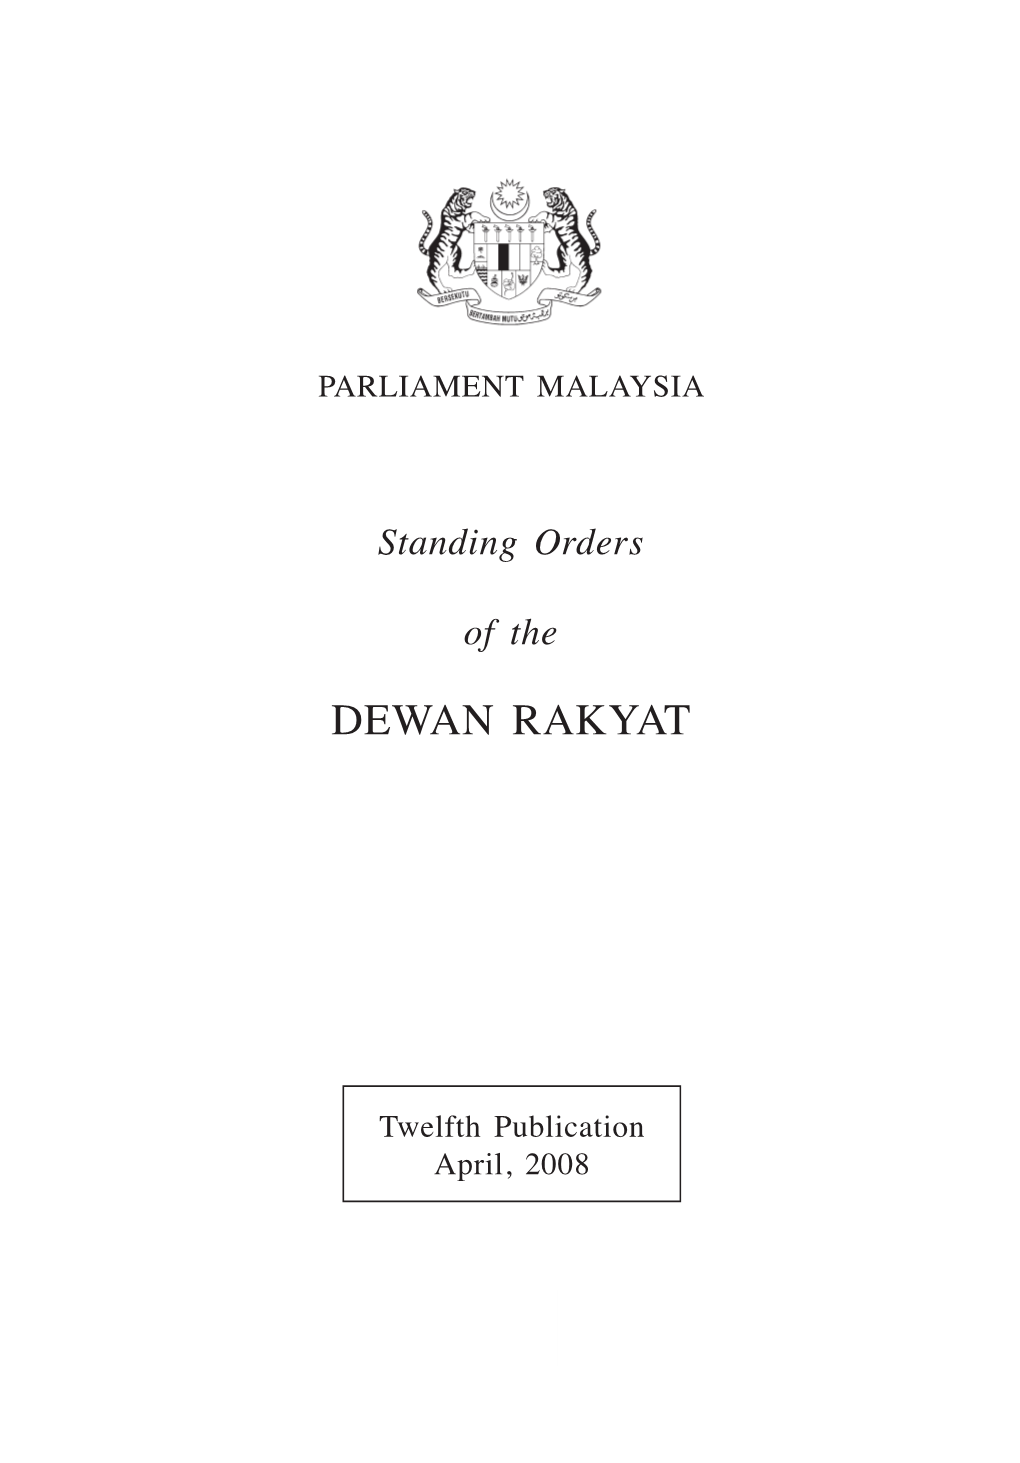 Dewan Rakyat Standing Orders 2008